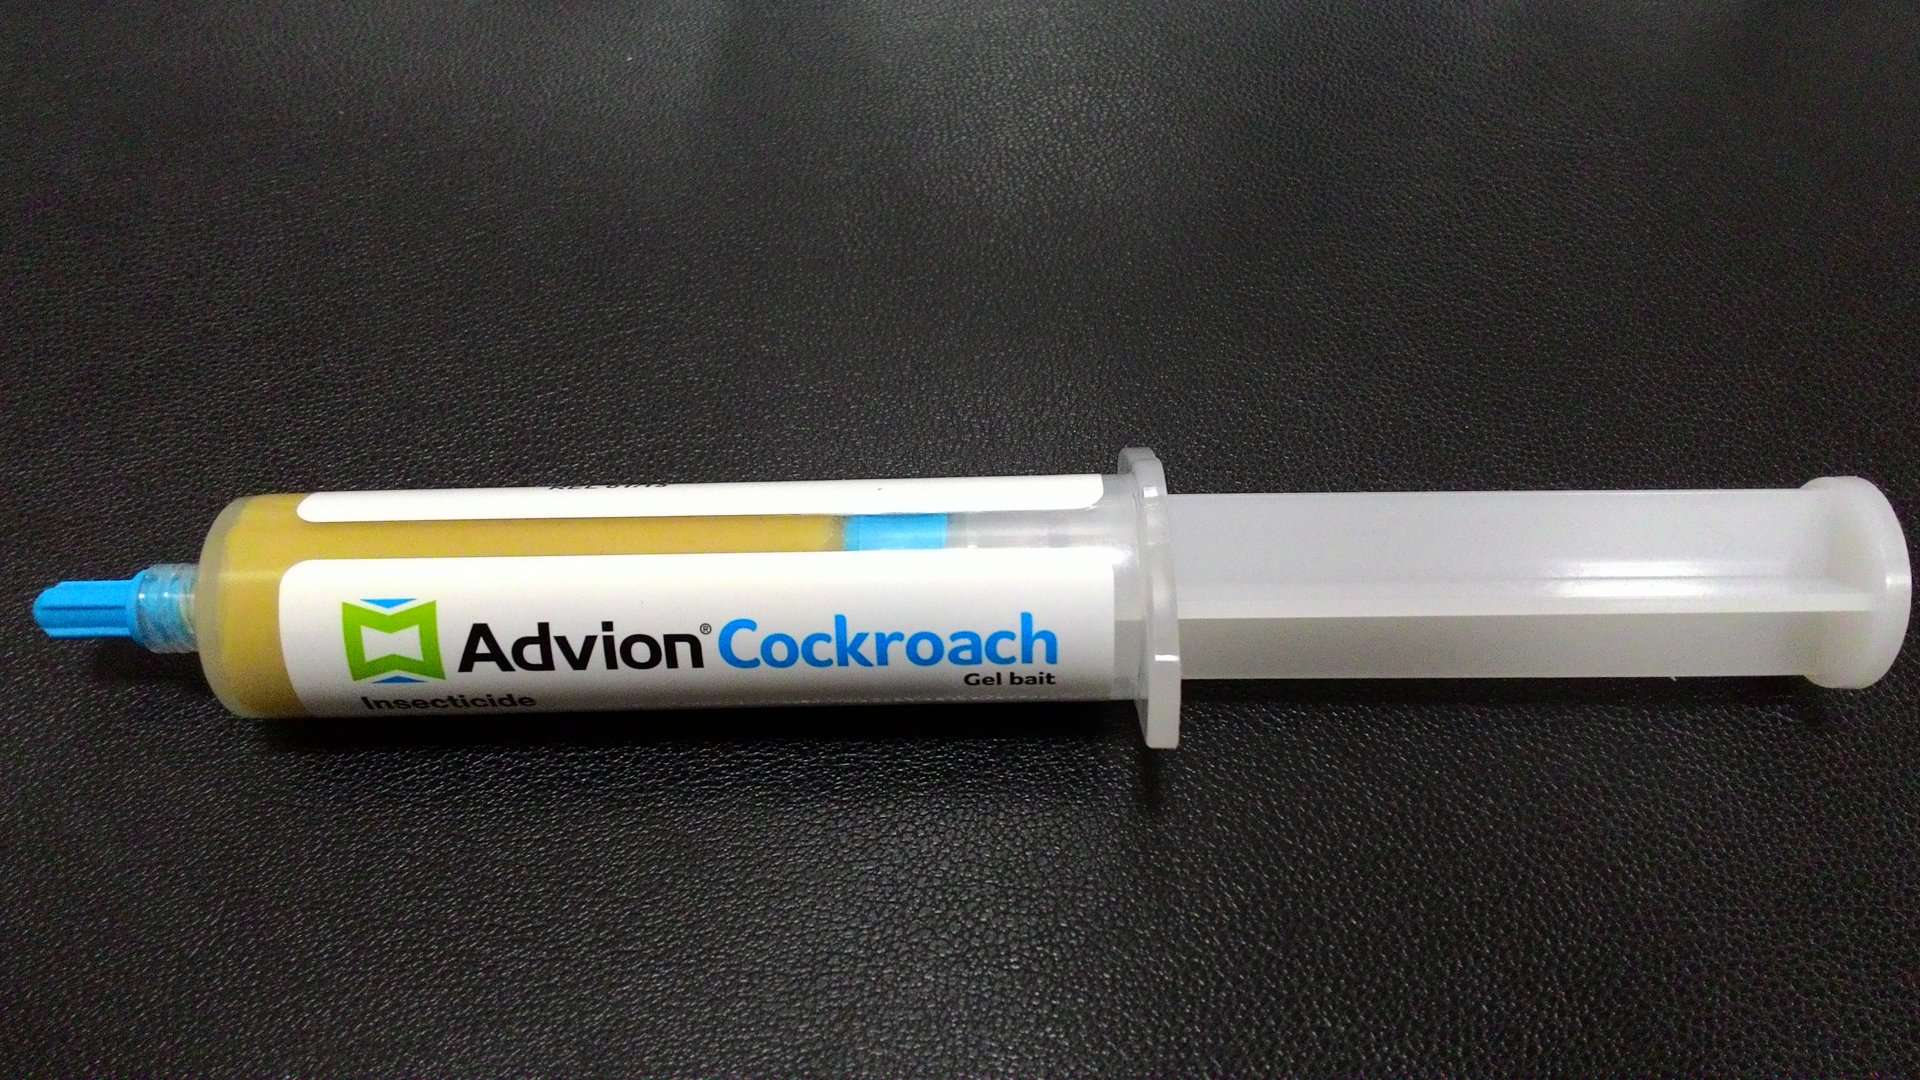 Advion Cockroach Gel Bait